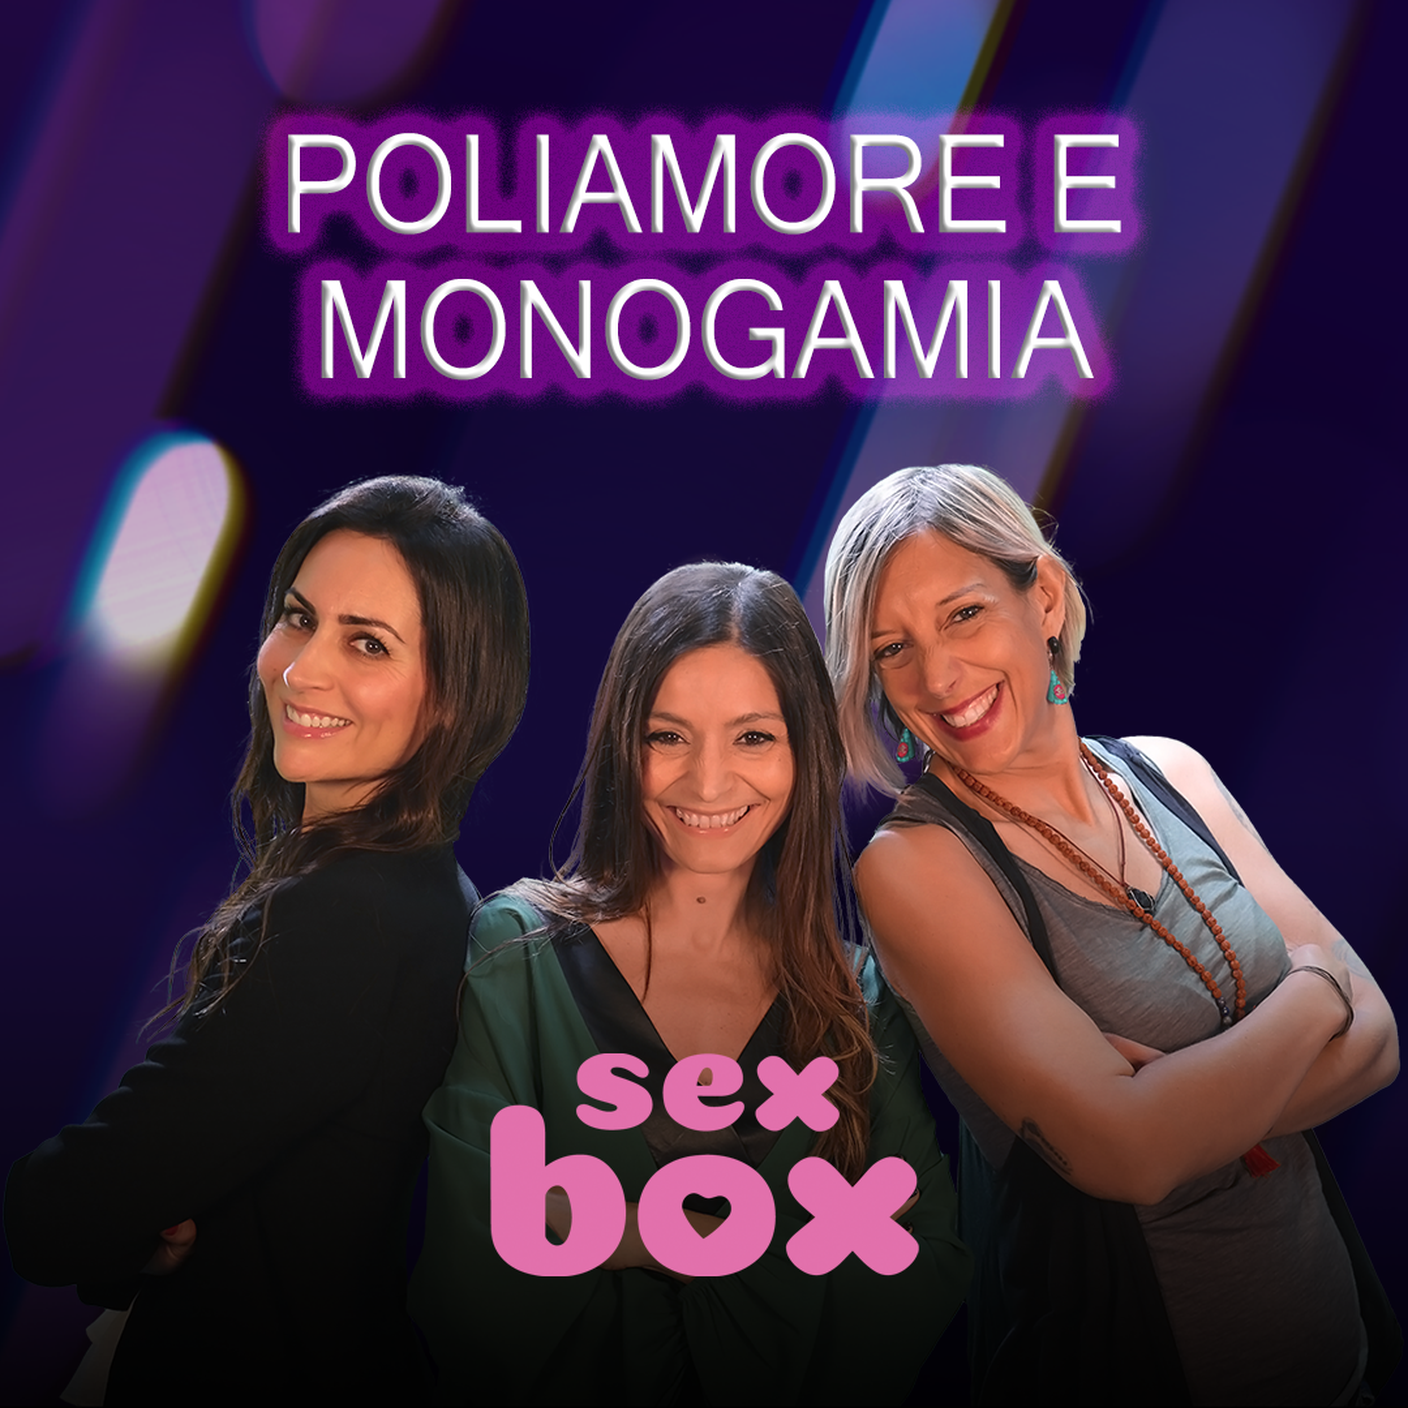 MONOGAMIA-POLIAMORE_sexbox